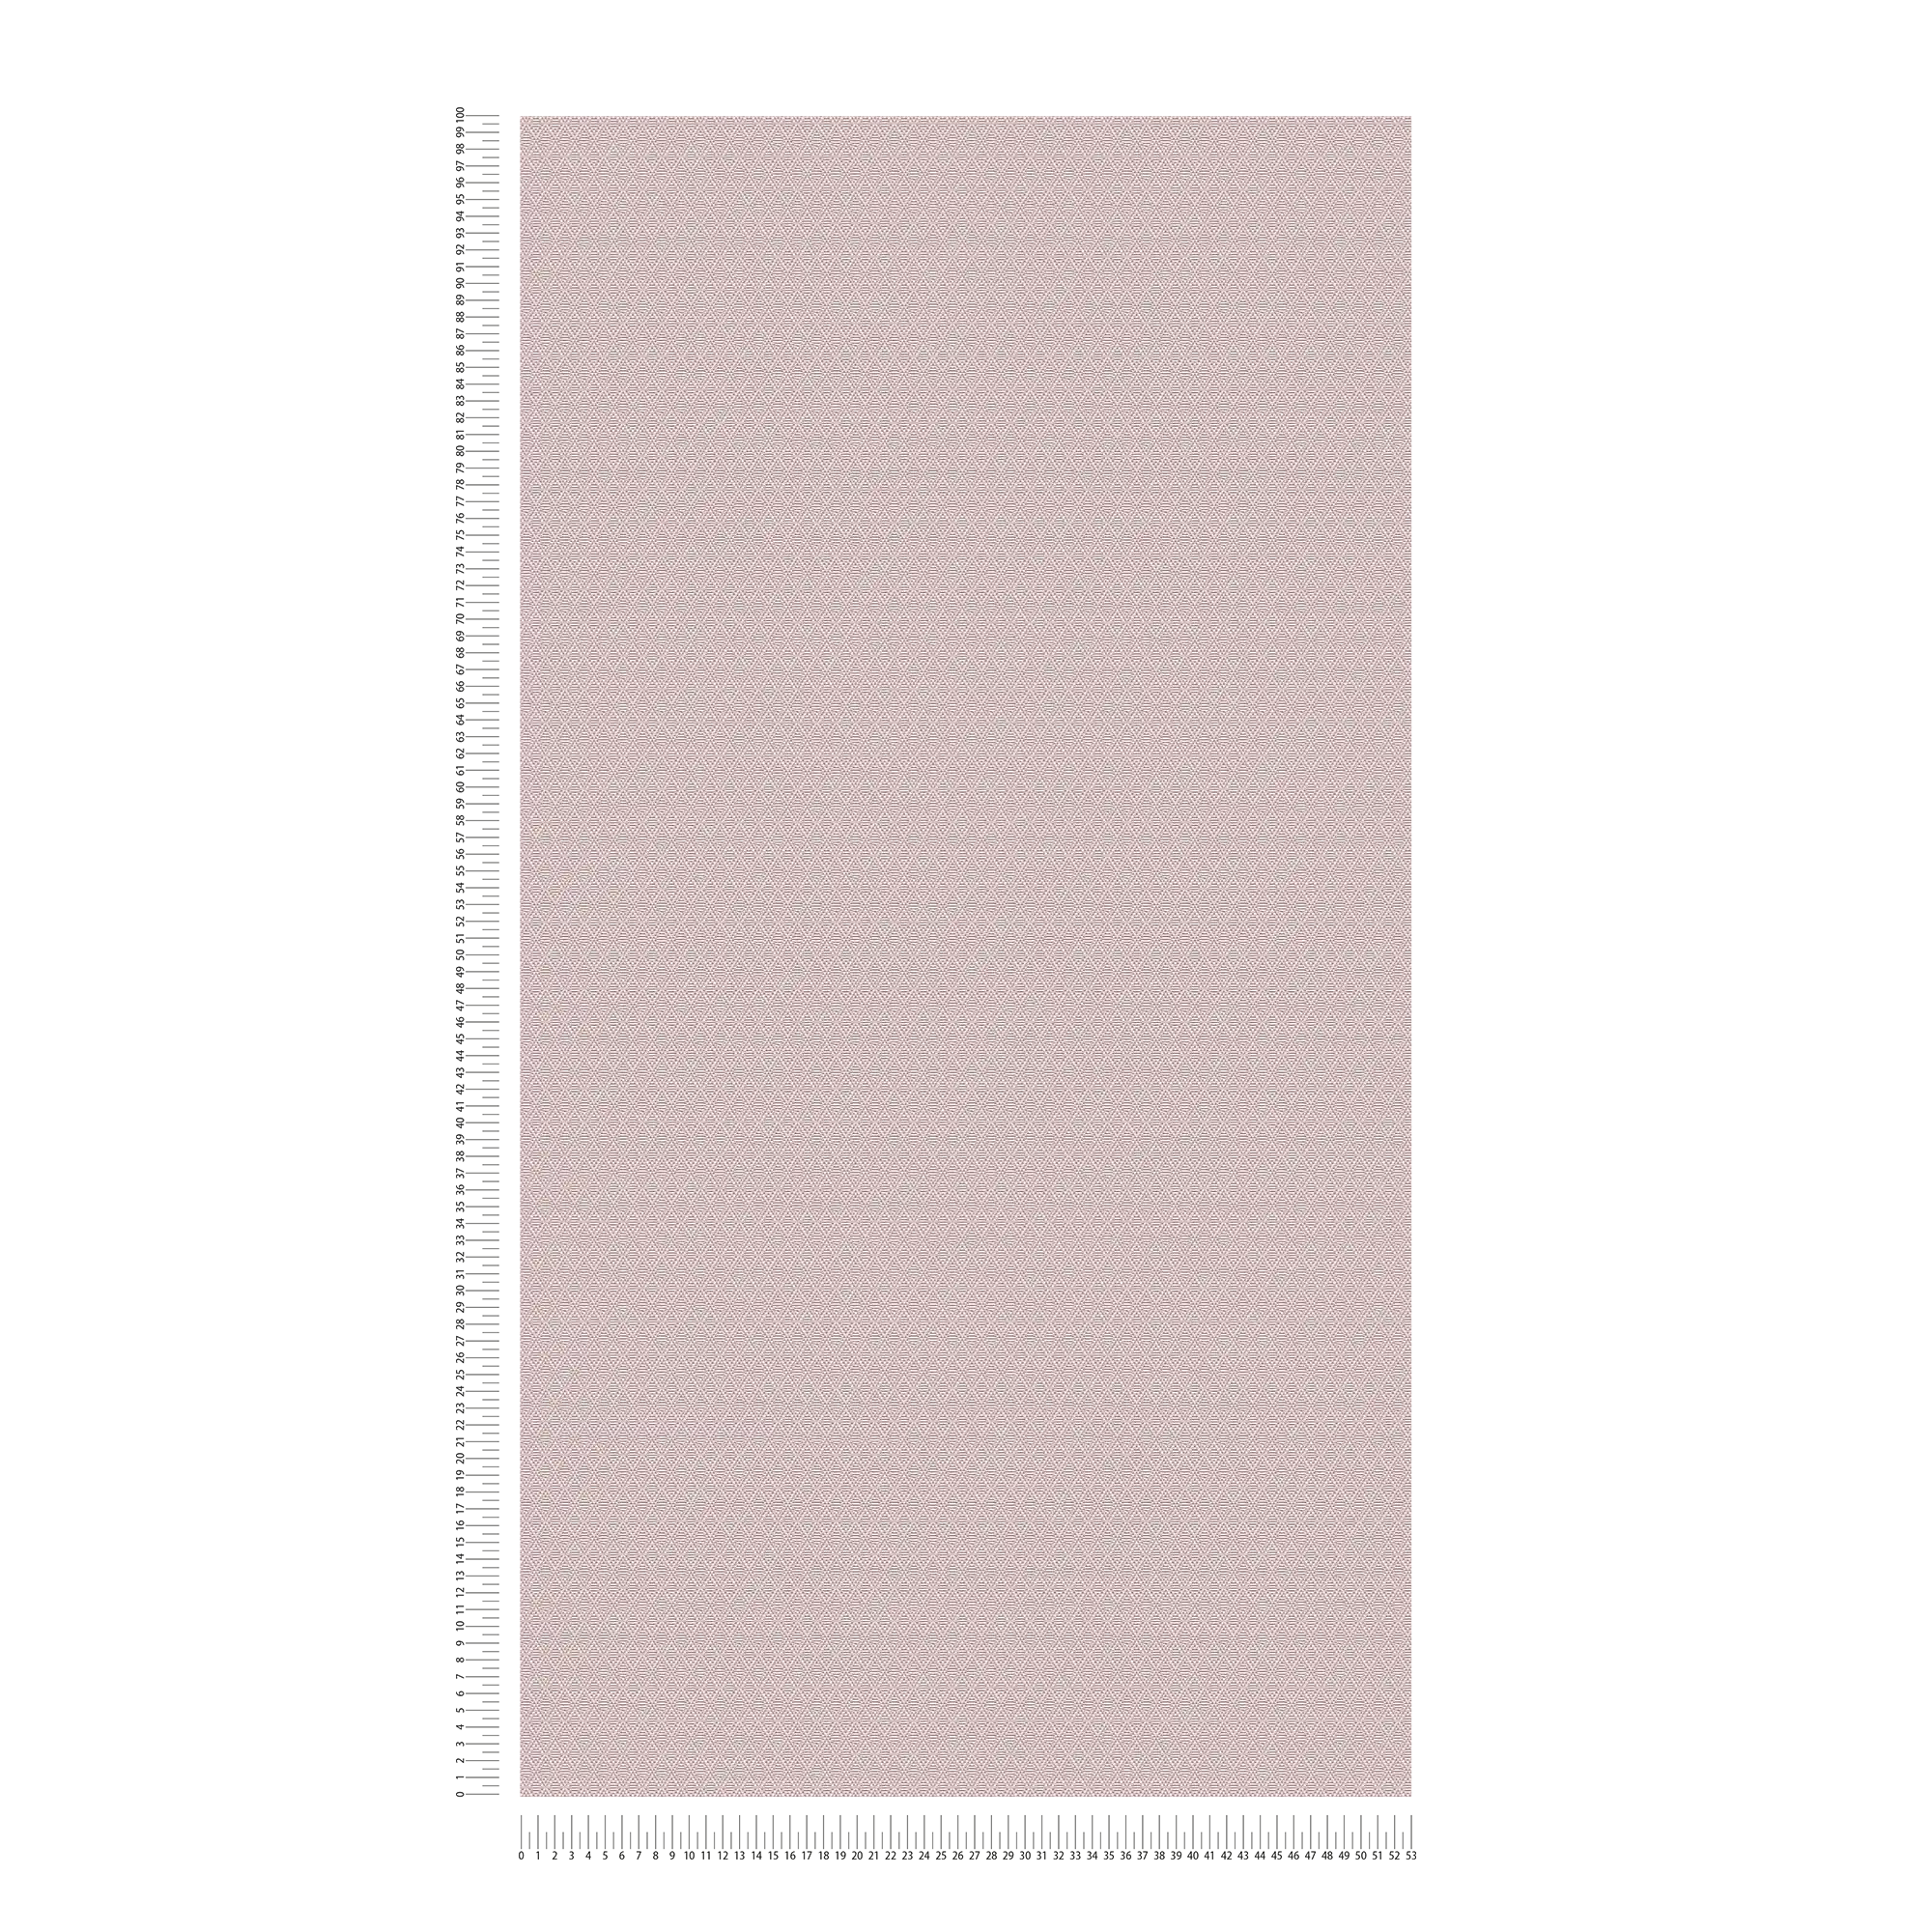             Matt plain wallpaper with fine texture pattern - brown
        